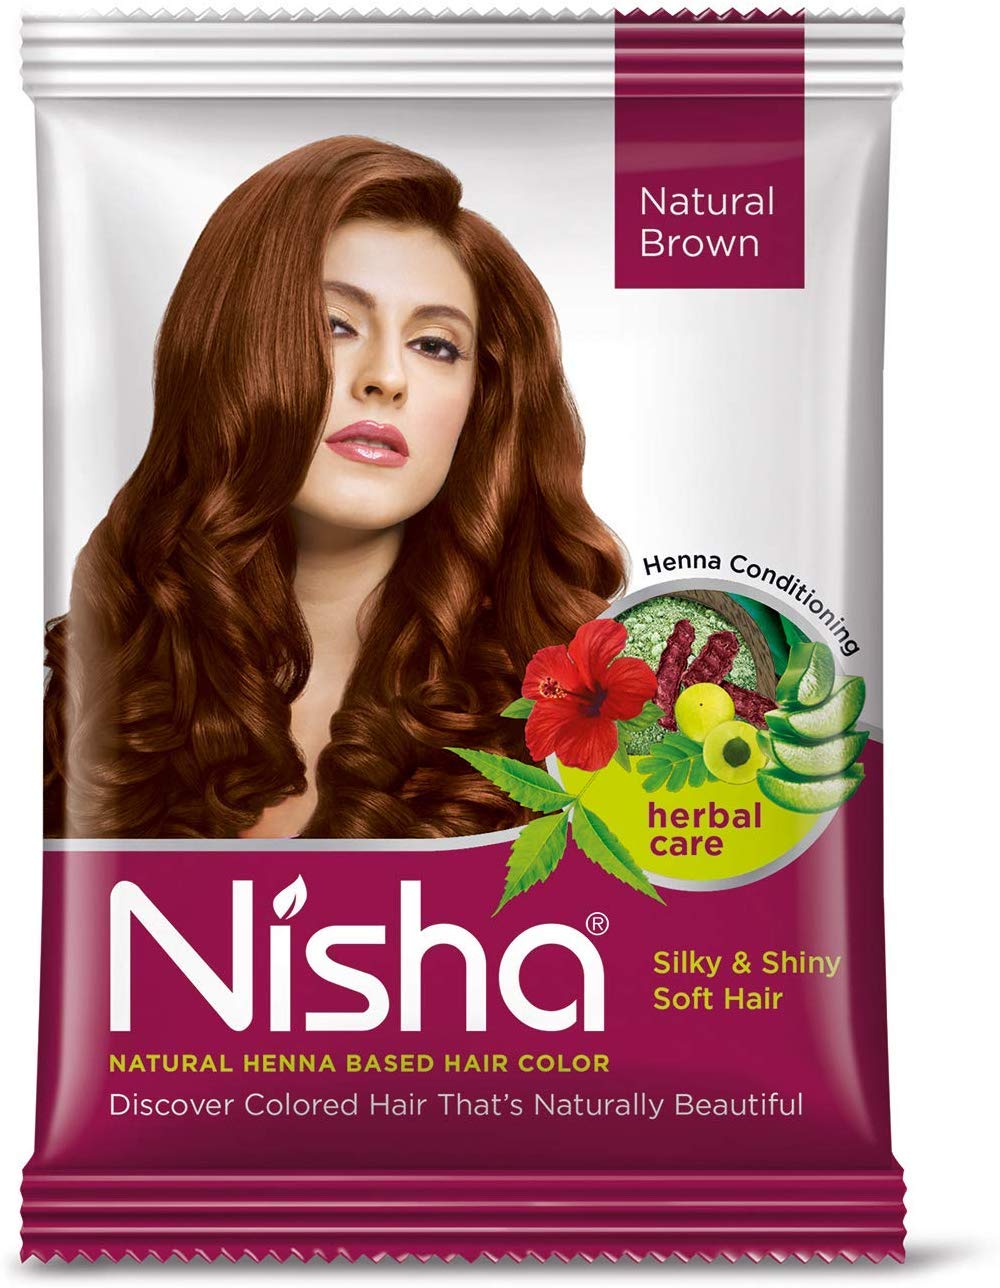 NISHA NATURAL HEENA BASED HAIR COLOR NATURAL BROWN